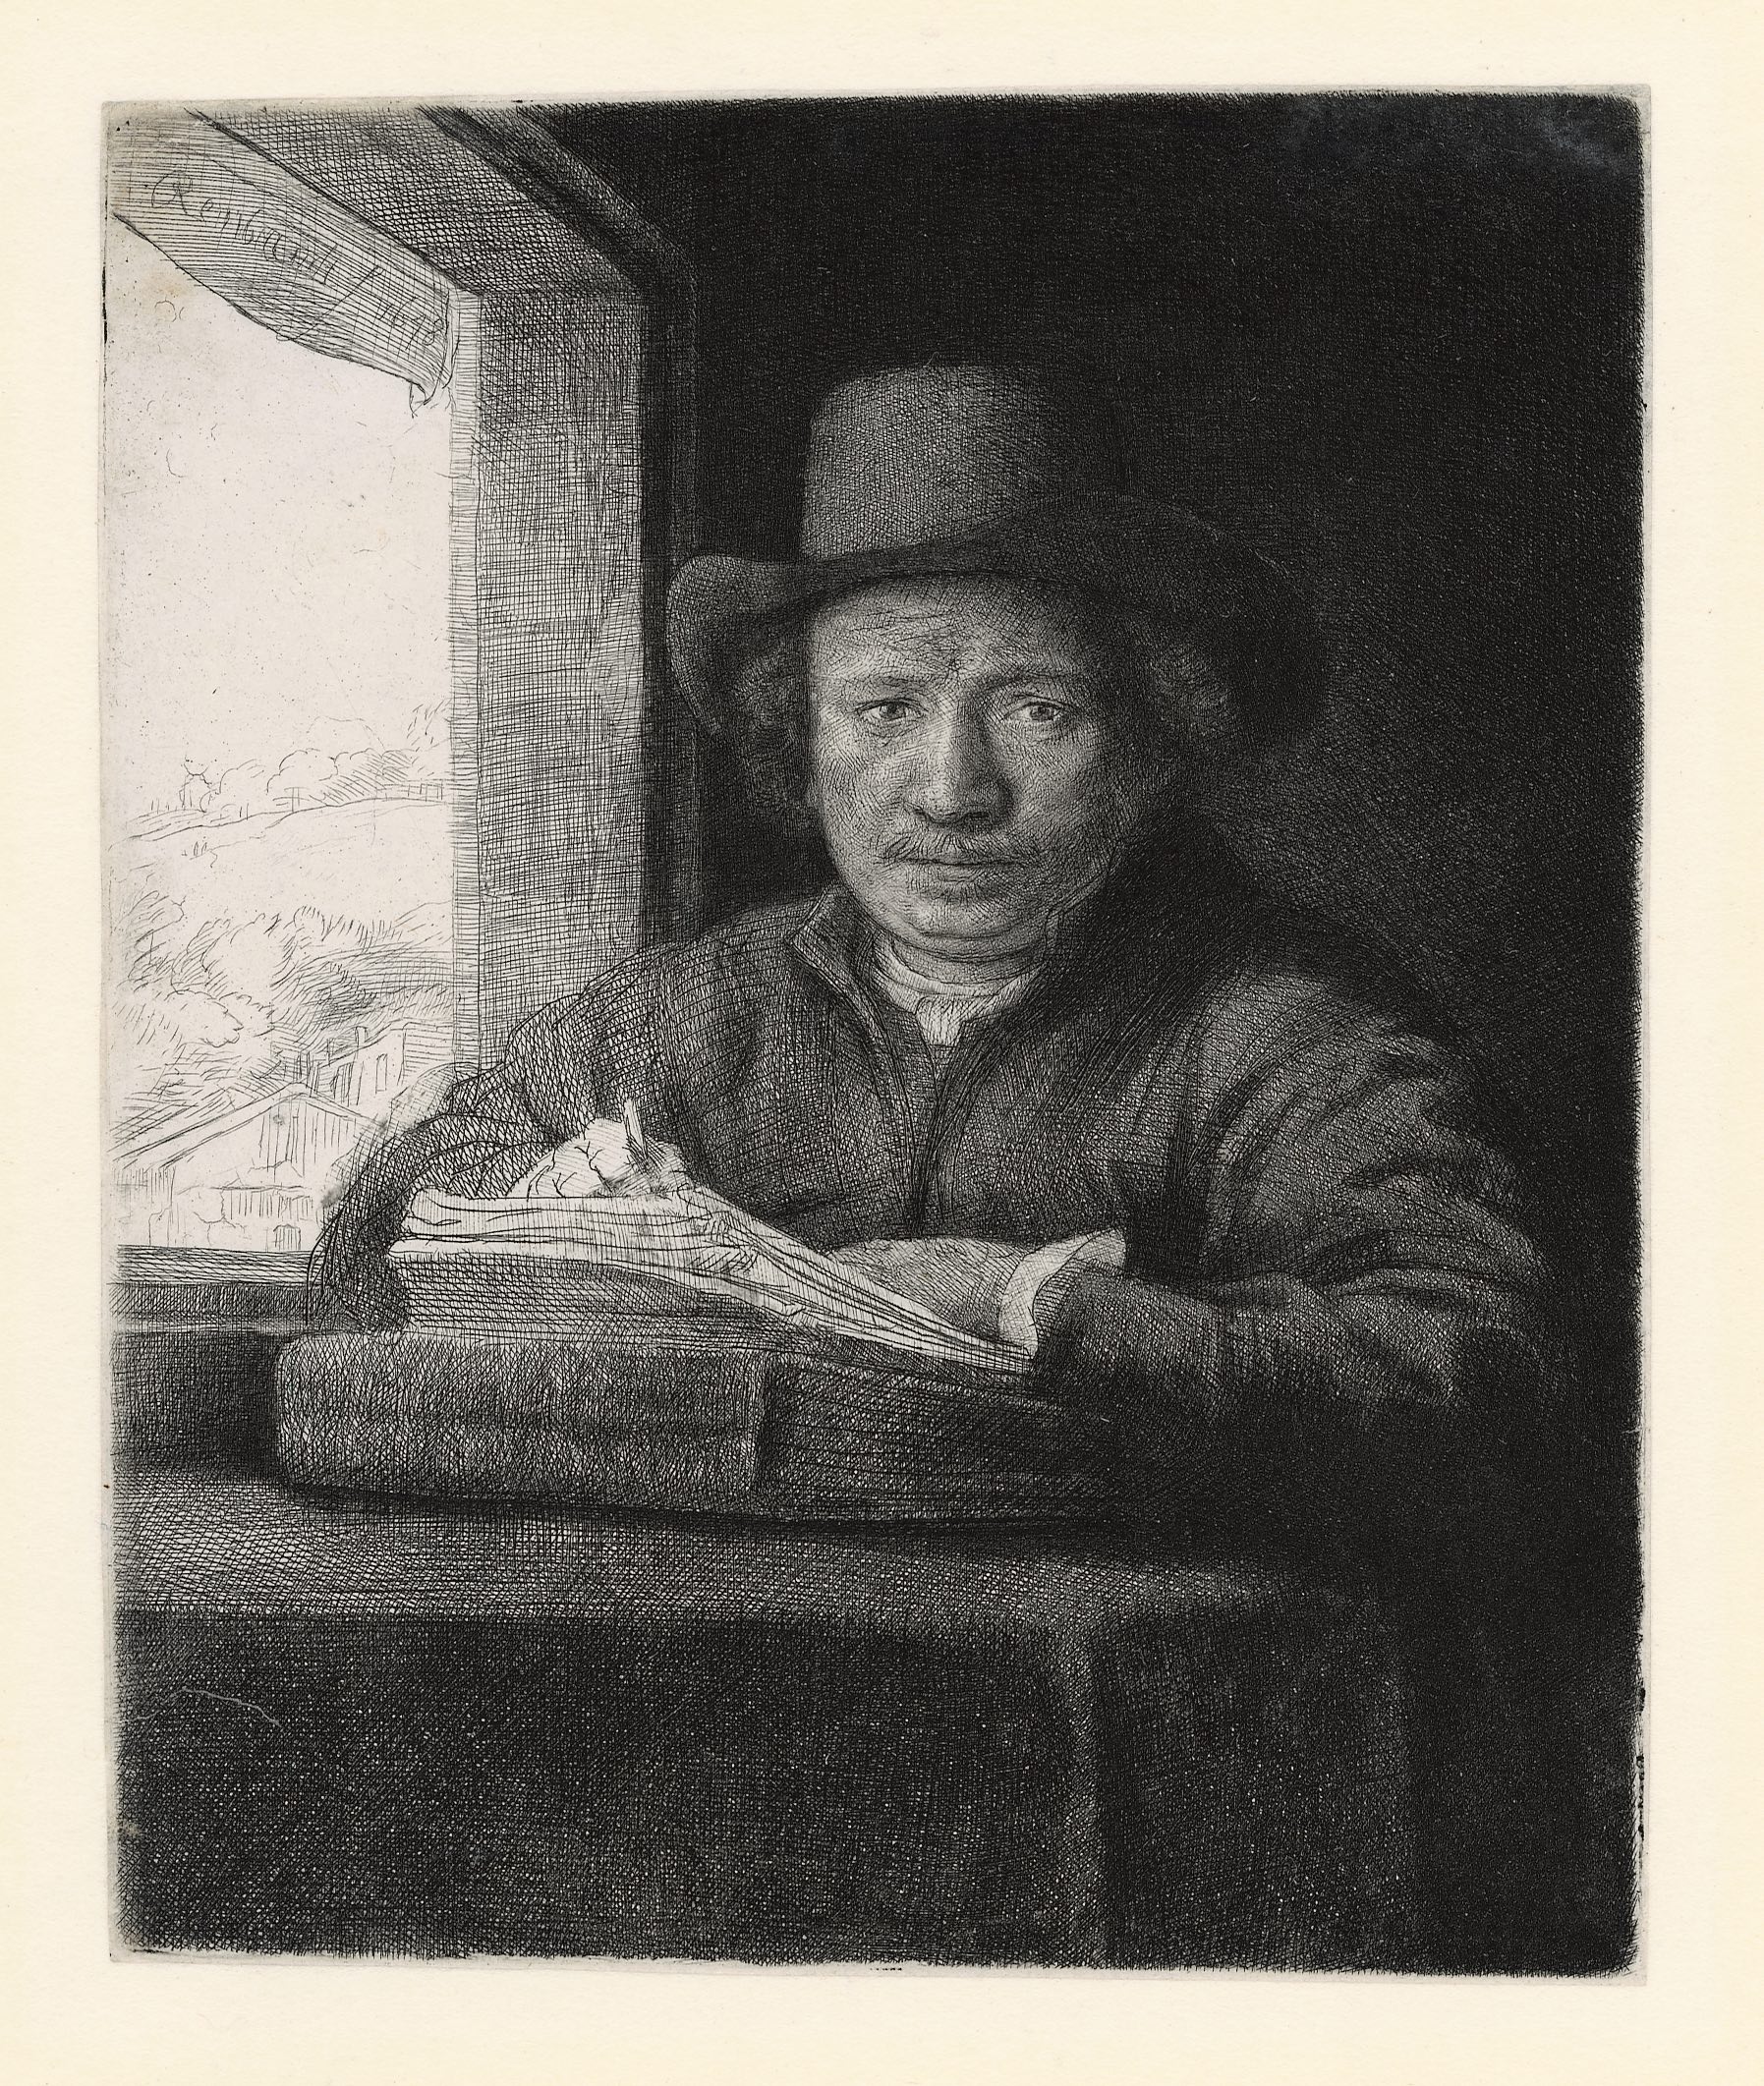 Self-portrait at a Window by Rembrandt van Rijn - 1648 - 160 x 130 mm Rembrandthuis